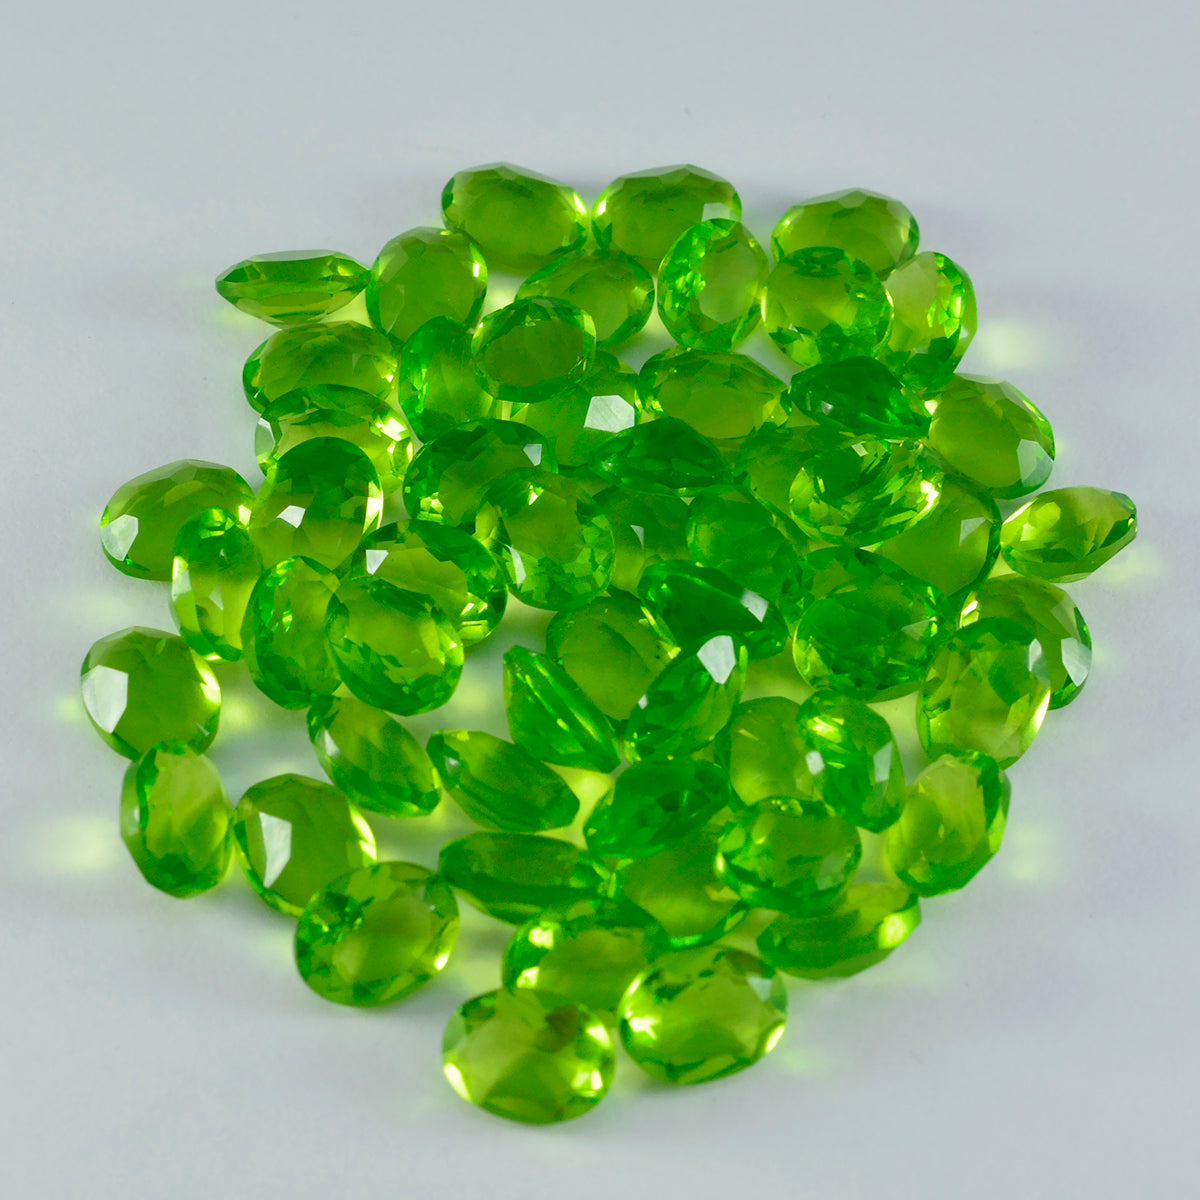 Riyogems 1 Stück grüner Peridot, CZ, facettiert, 5 x 7 mm, ovale Form, hübsche, hochwertige lose Edelsteine